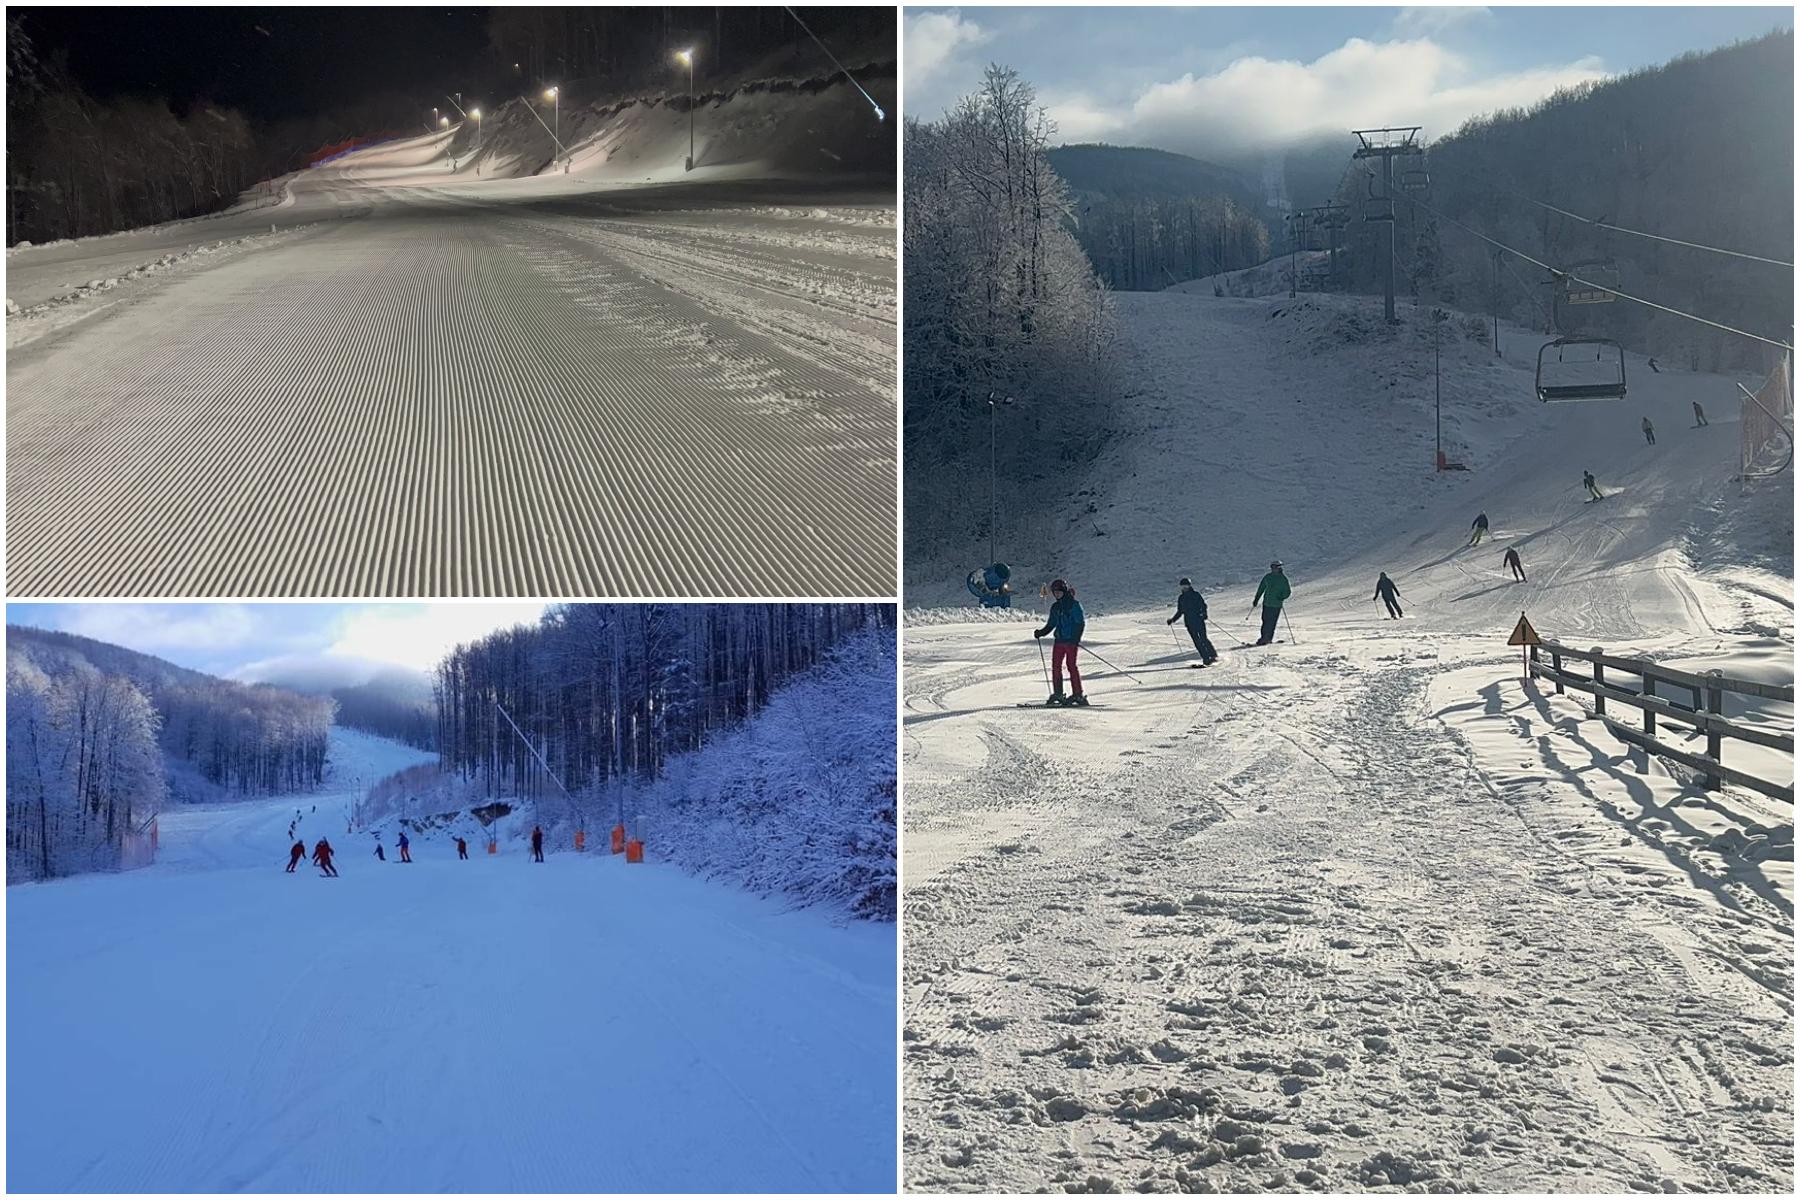 Staţiunea din România în care turismul va exploda, după deschiderea primei pârtii de schi. Visul, împlinit după 30 de ani: lucrările au început în comunism